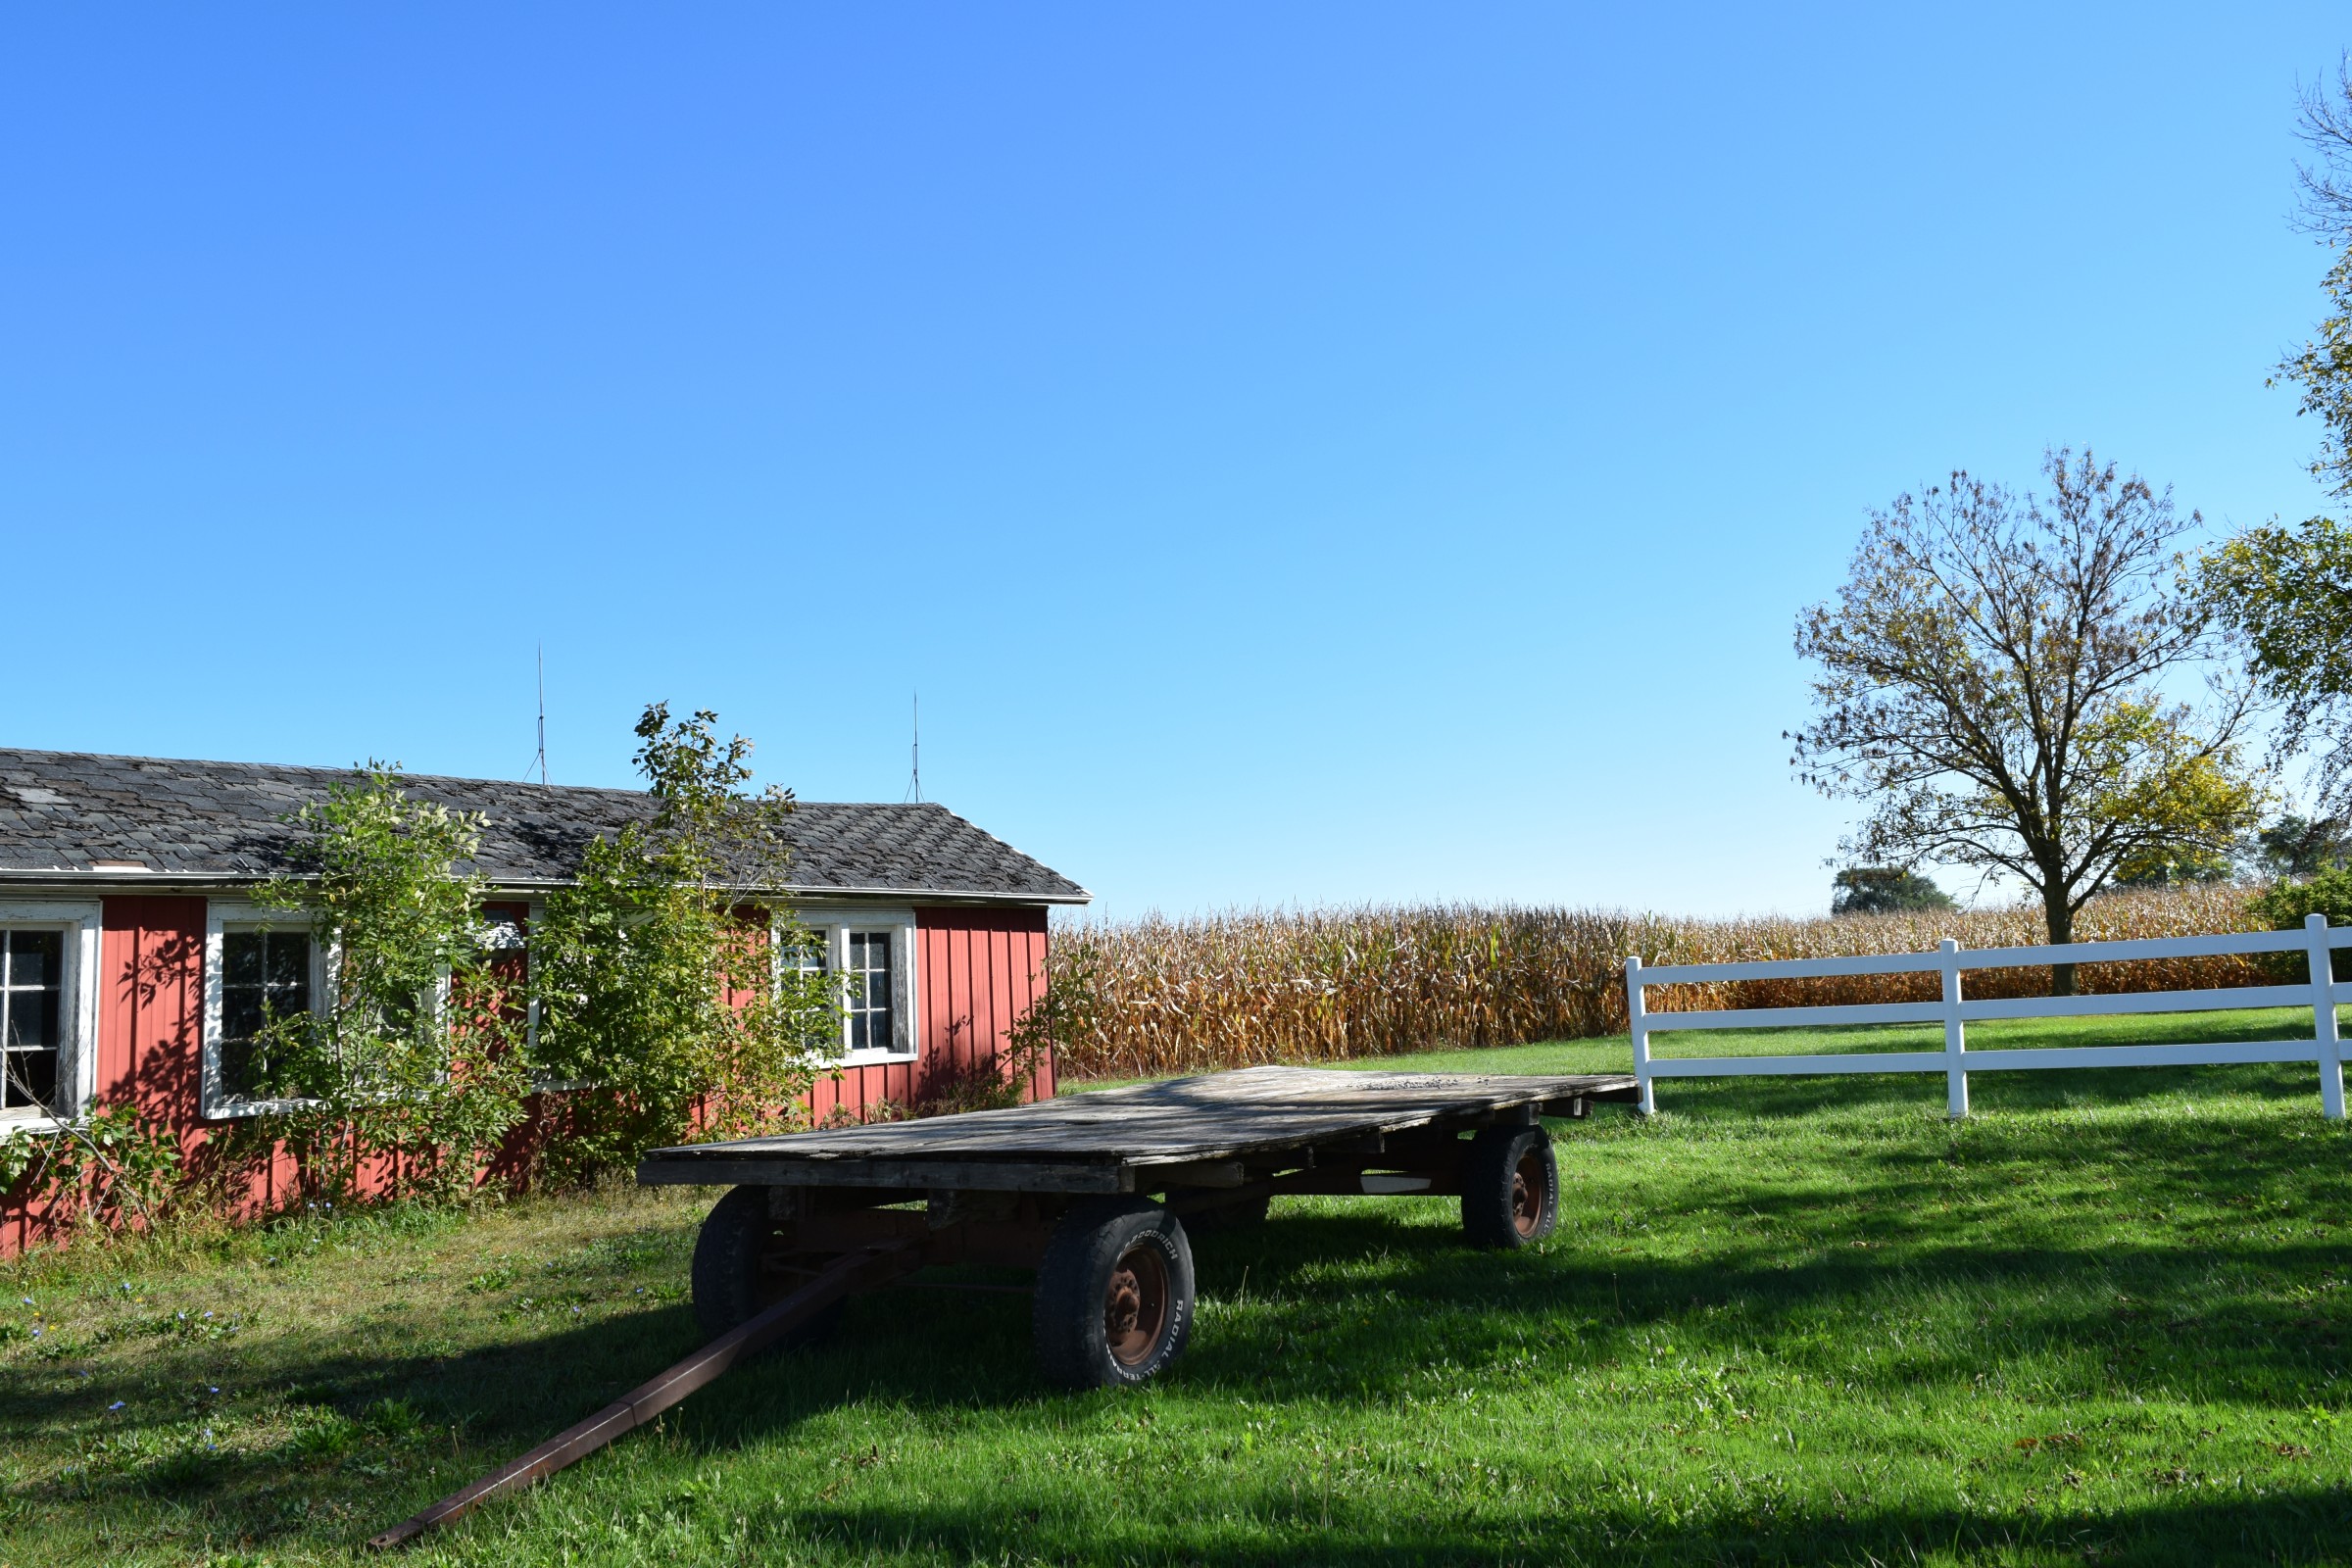 Barn, green grass and trailer